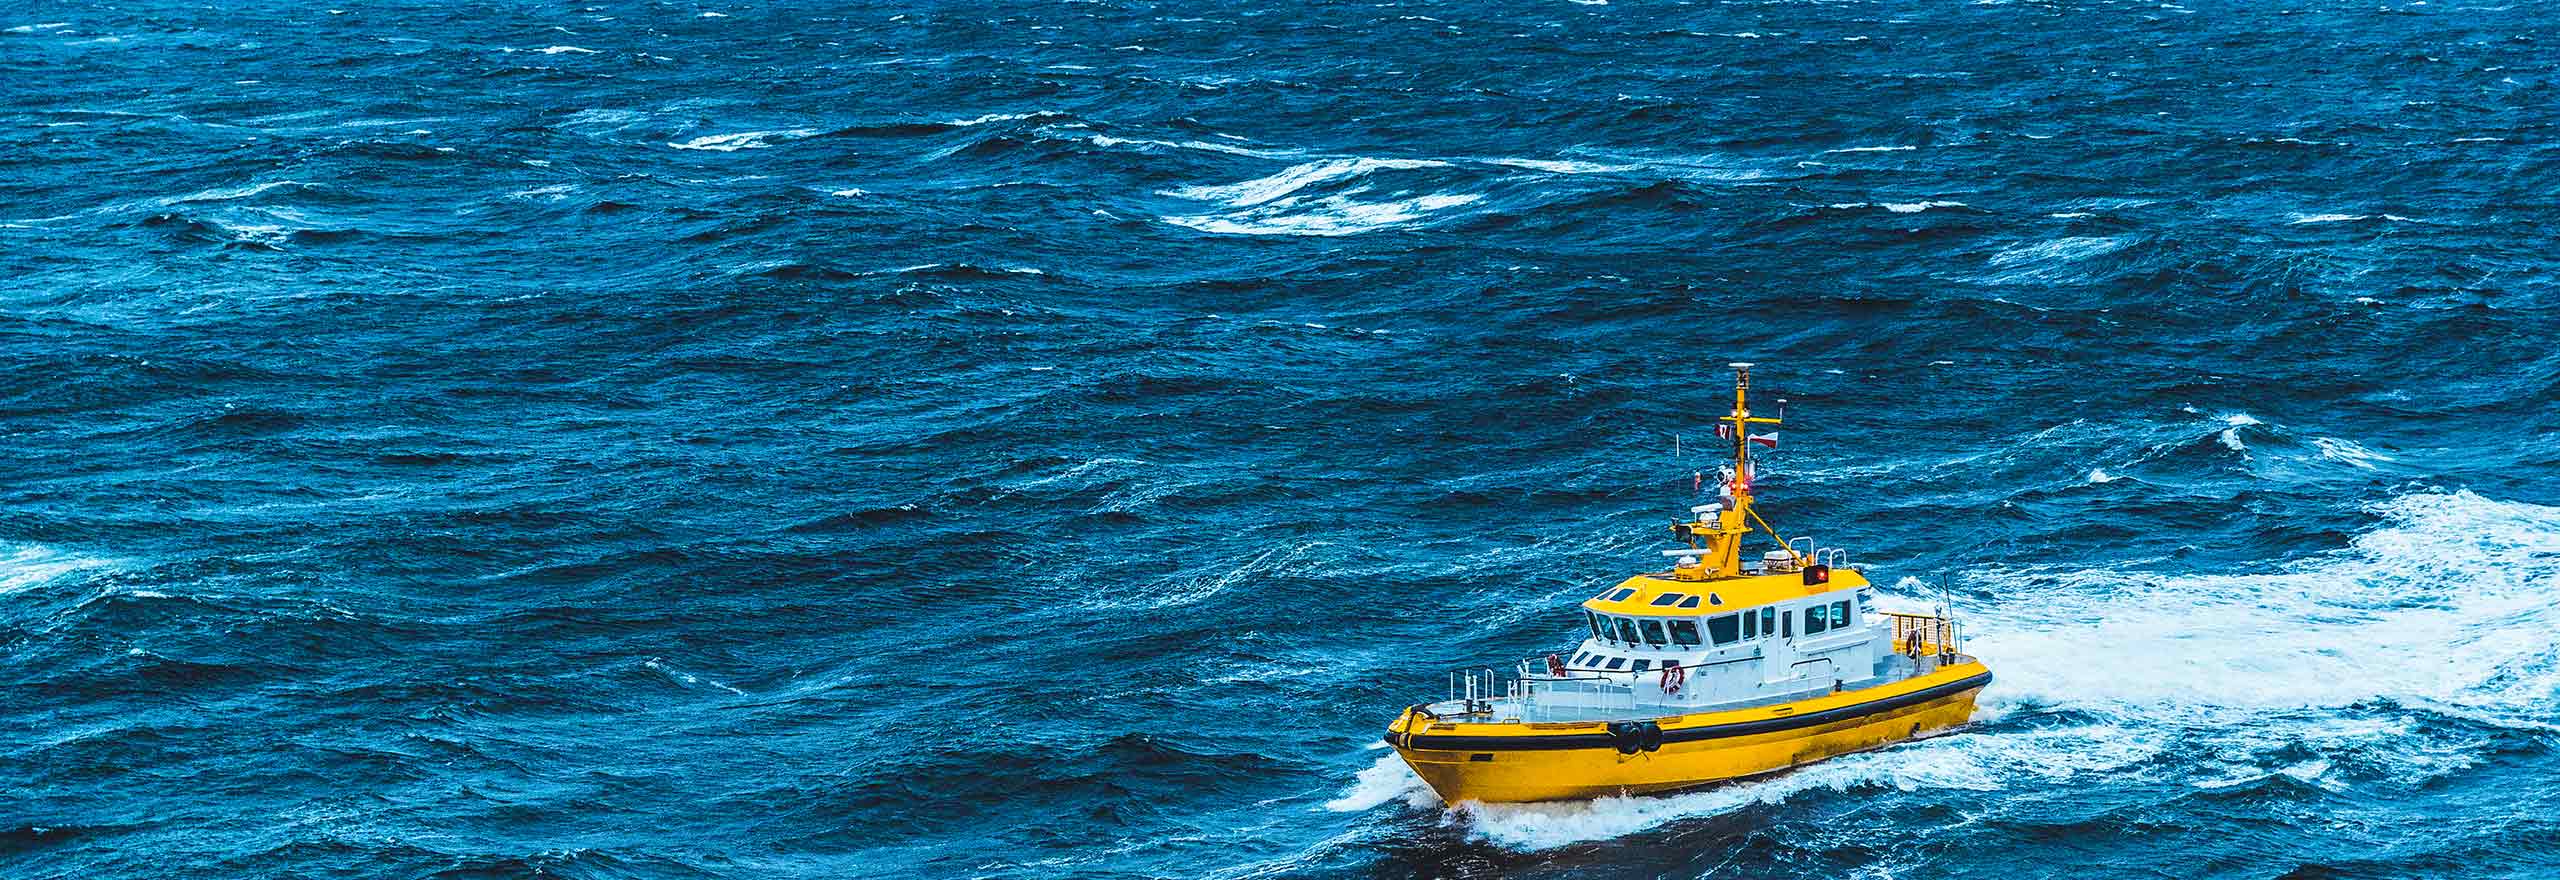 沖合の荒波にもまれる黄色の海岸警備船。